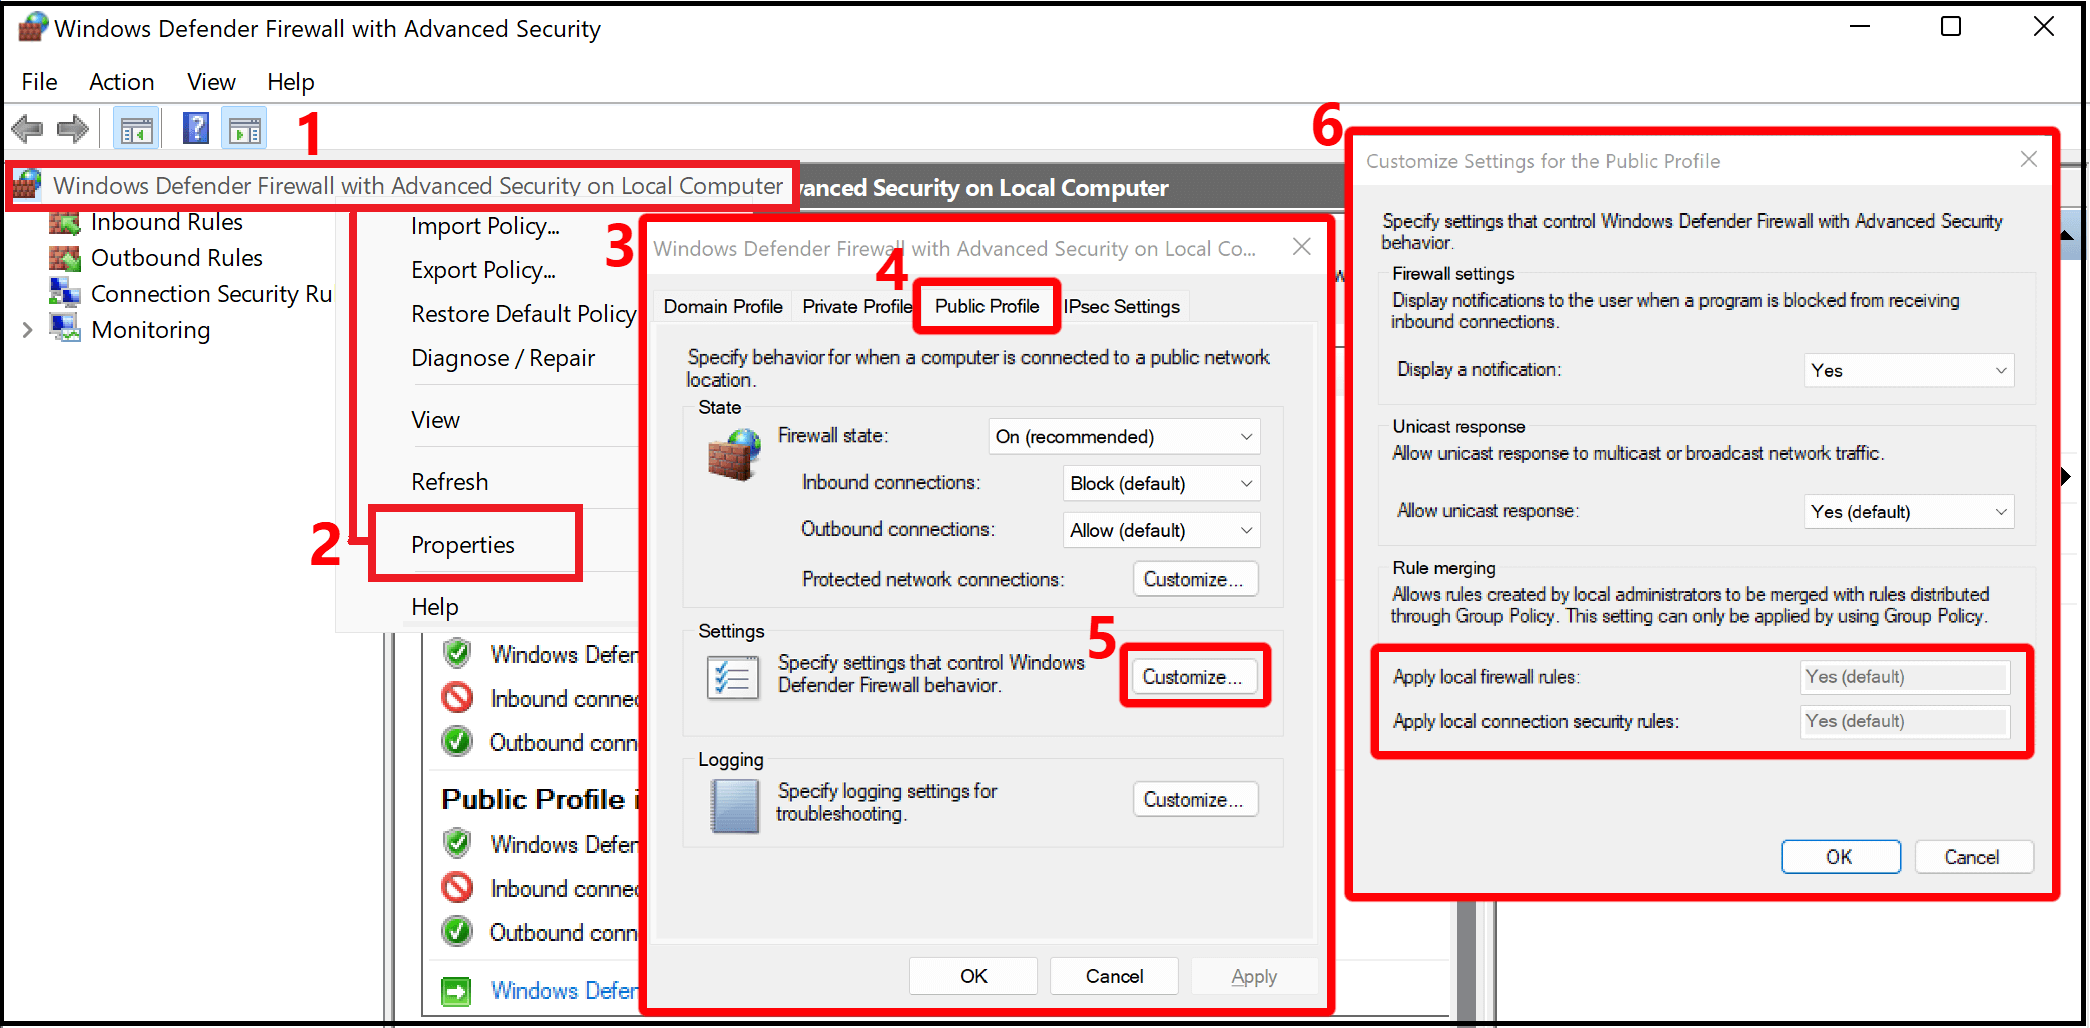 Pour activer Windows Script Host, double-cliquez sur la clé Enabled.
Dans la fenêtre de modification de la valeur, changez la valeur de 0 à 1 et cliquez sur OK pour enregistrer les modifications.